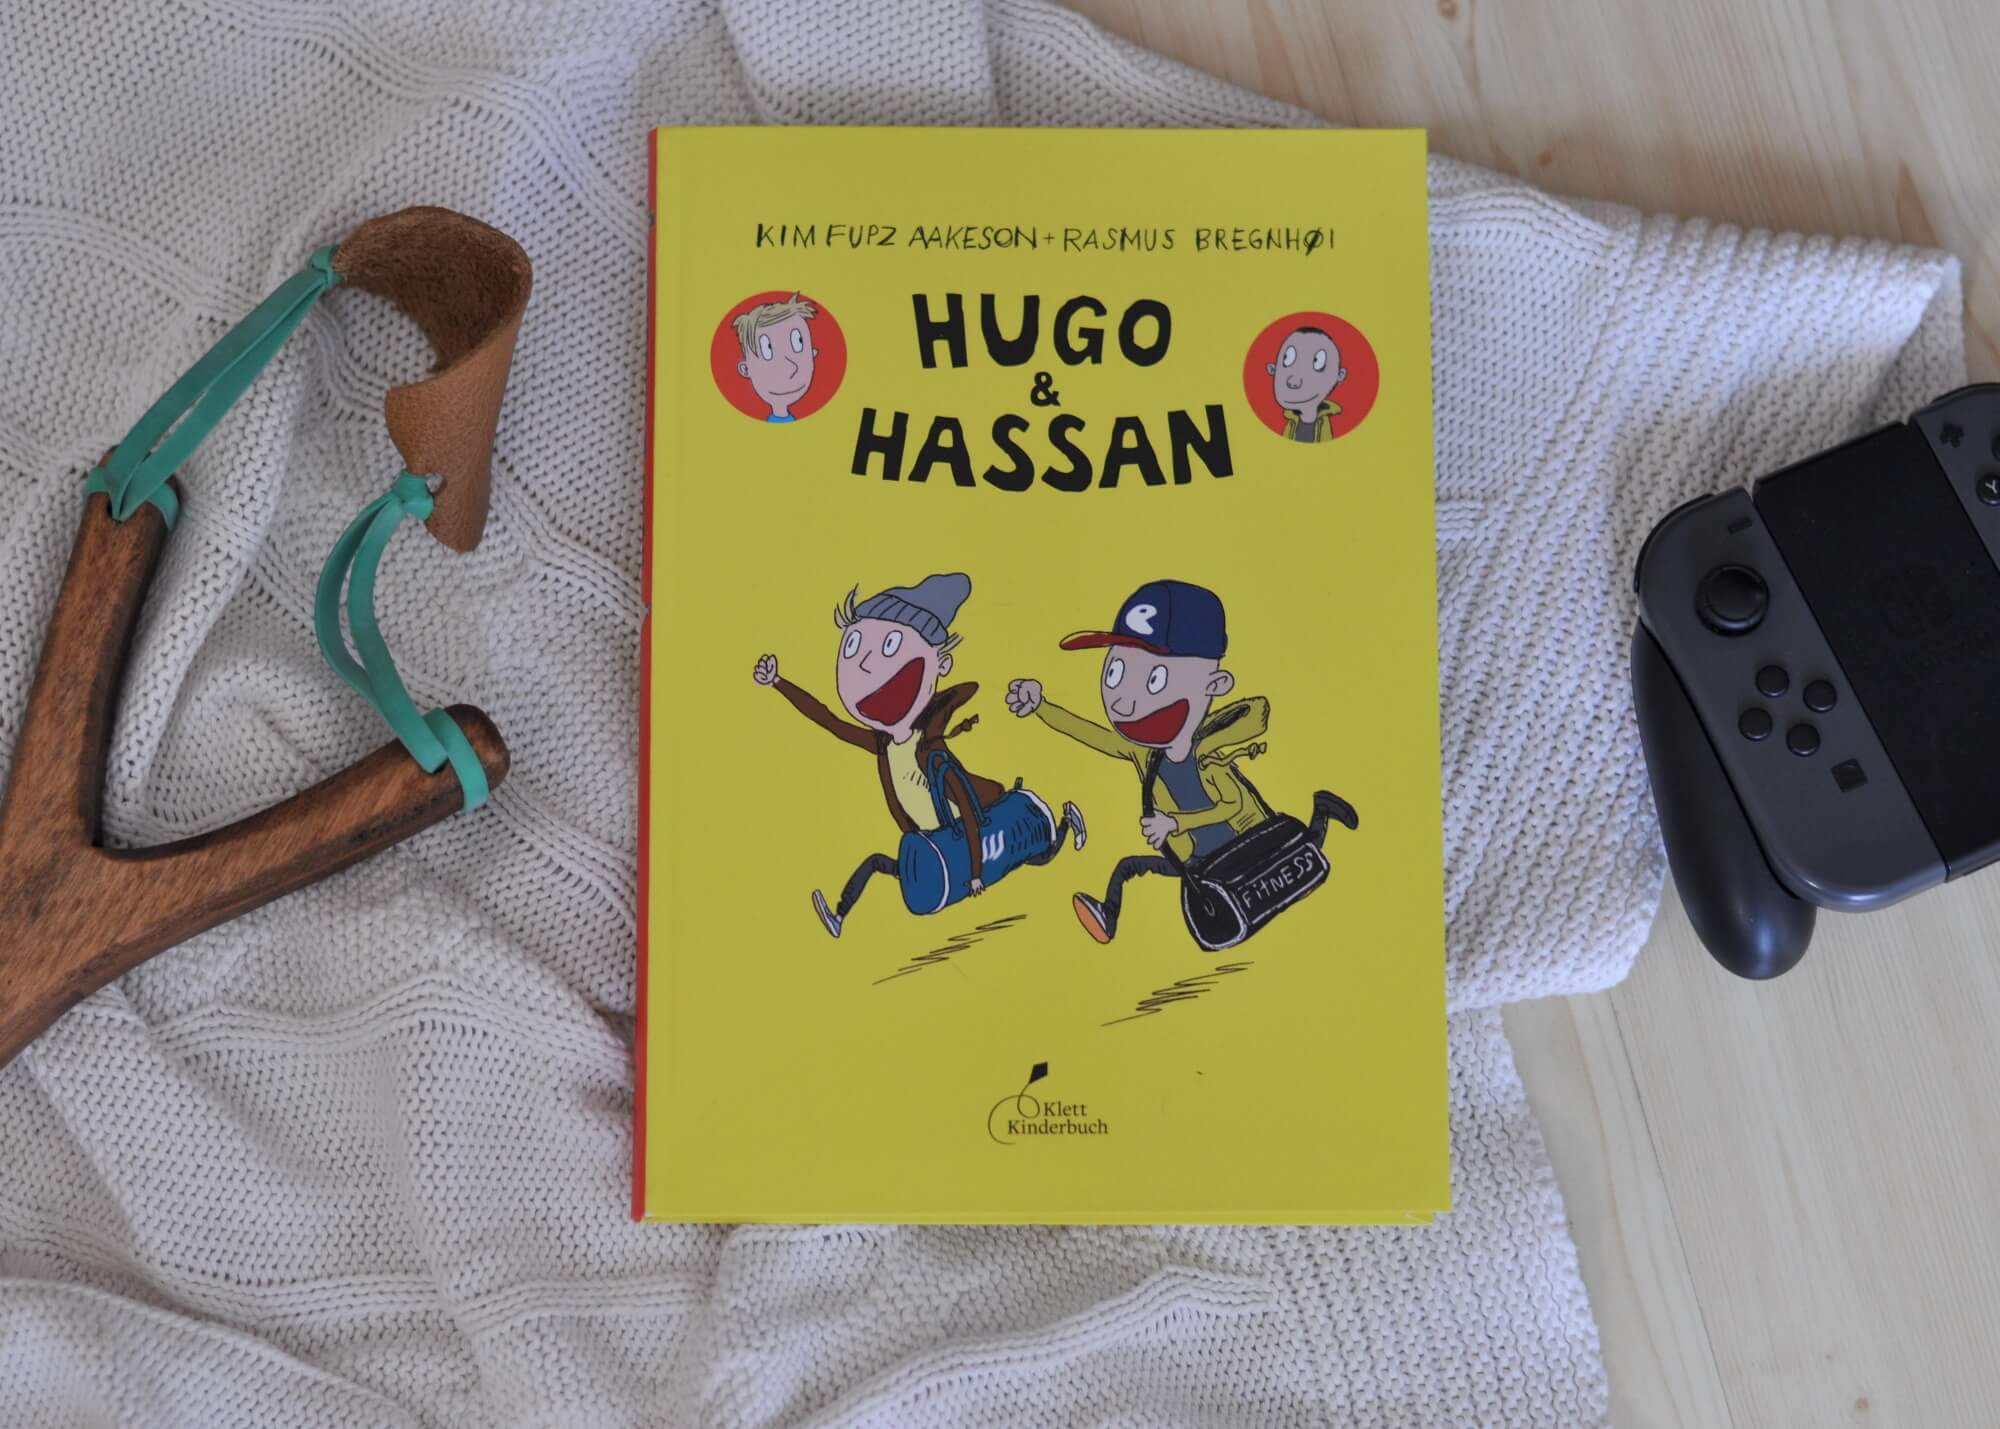 Als Hugo und Hassan an einem öden Nachmittag zum ersten Mal im Hinterhof aufeinandertreffen, stehen sie erst einmal wie zwei Cowboys gegenüber und vermöbeln sich fast. Trotzdem sind sie ab sofort fast unzertrennlich. Denn Hugo und Hassan sind auf einer Wellenlinie. Sie lieben Fußball, Computerspiele und Arschbomben im Schwimmbad. #comic #freundschaft #jungs #zocken #fußball #kloppen #streit #freunde #lesen #kidnerbuch